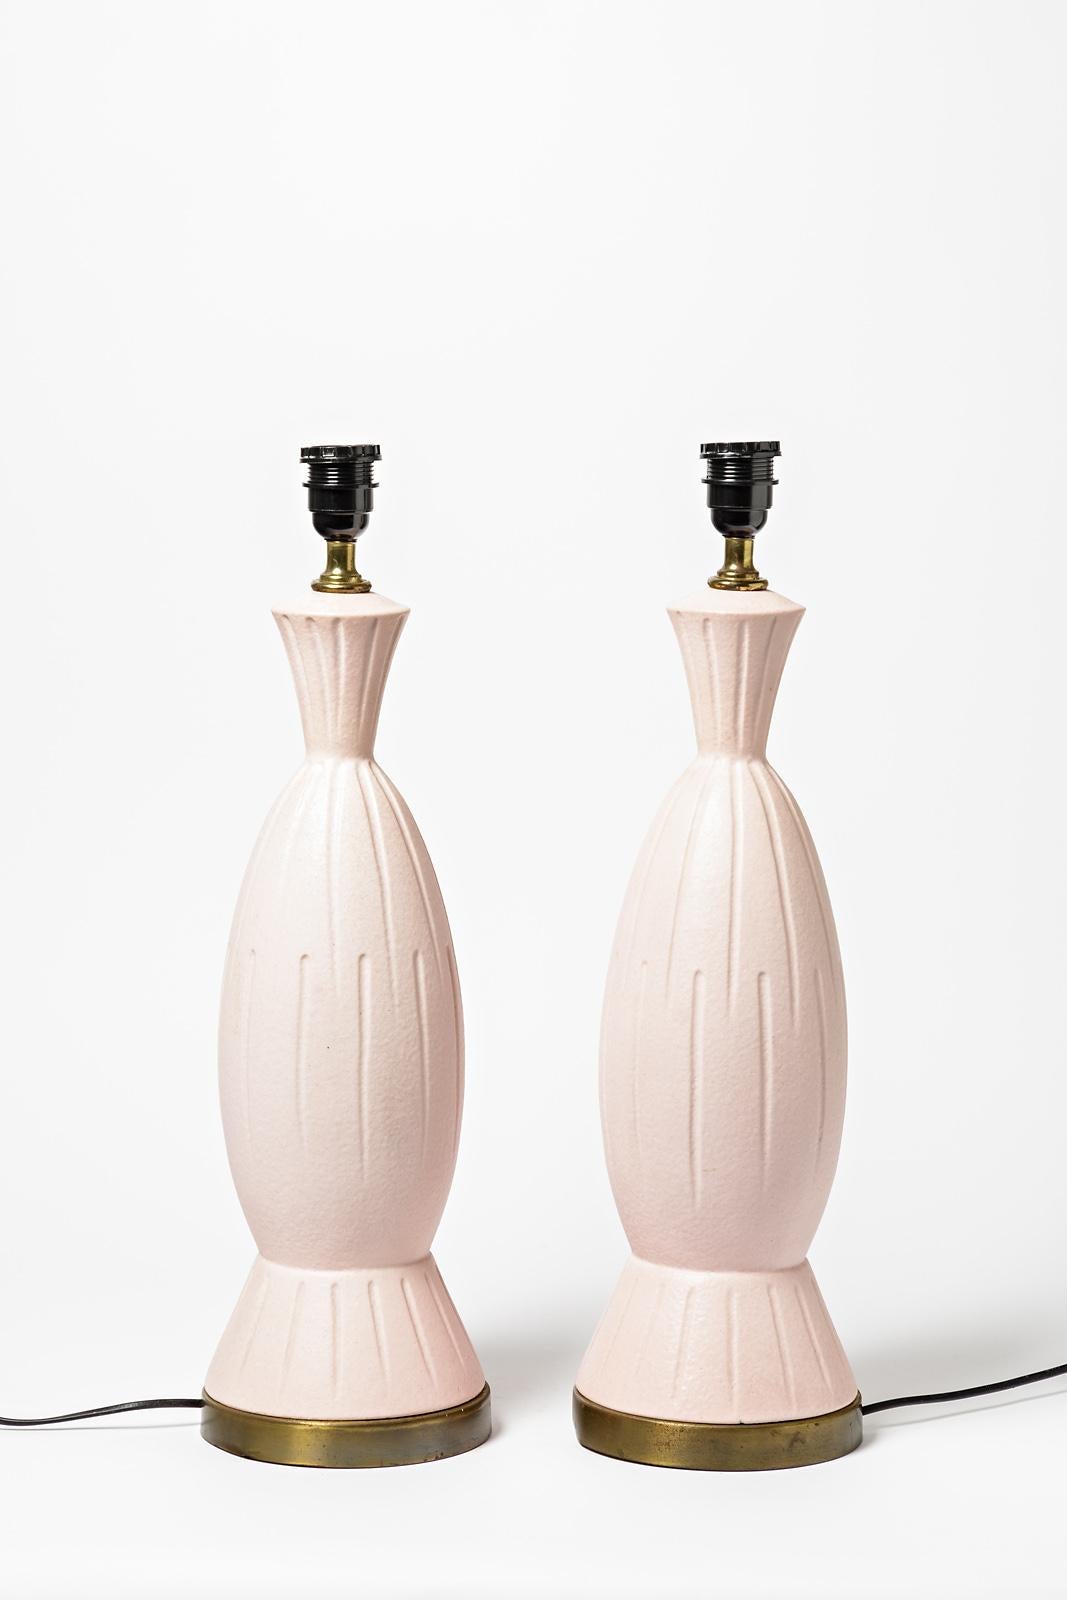 Französisches Paar Keramik-Tischlampen

Realisiert um 1970

20. Jahrhundert Design 

Großes Paar Tischlampen mit hellrosa Keramik Glasur Farben

Elektrische Anlage ist neu

Original guter Zustand - sehr leichte Oxidation auf dem Metallfuß